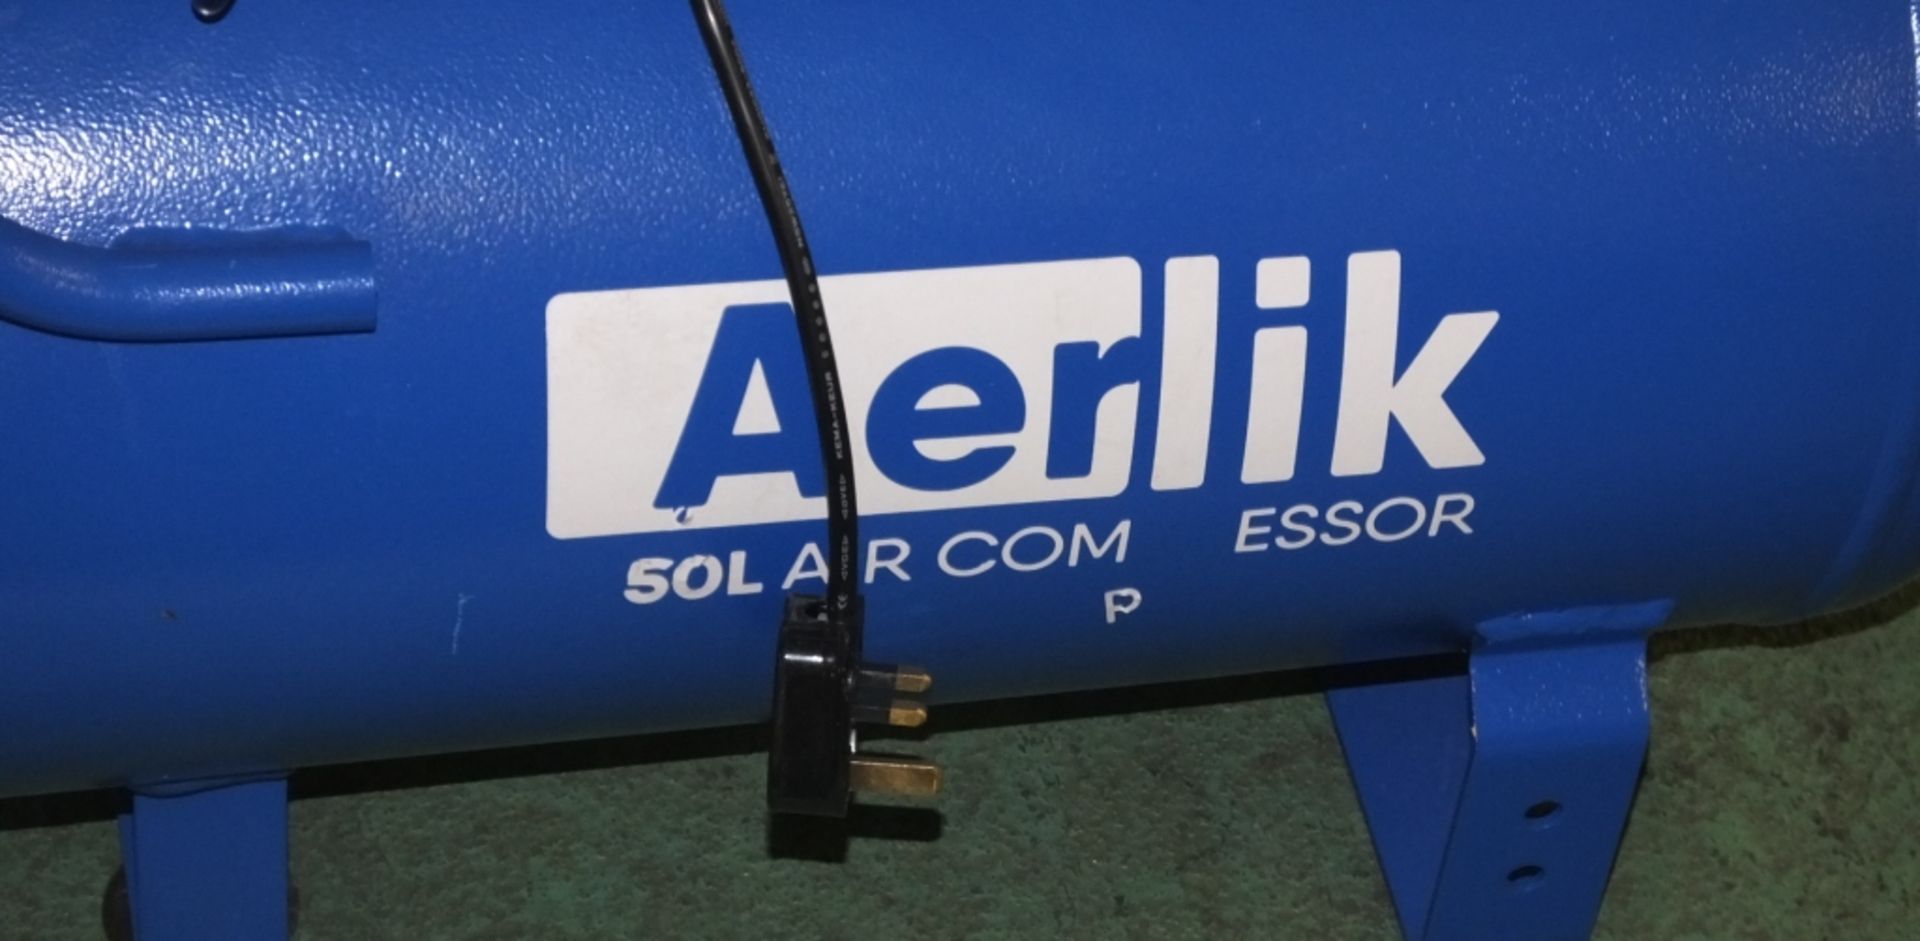 Aerlik 50L Compressor - Image 2 of 3